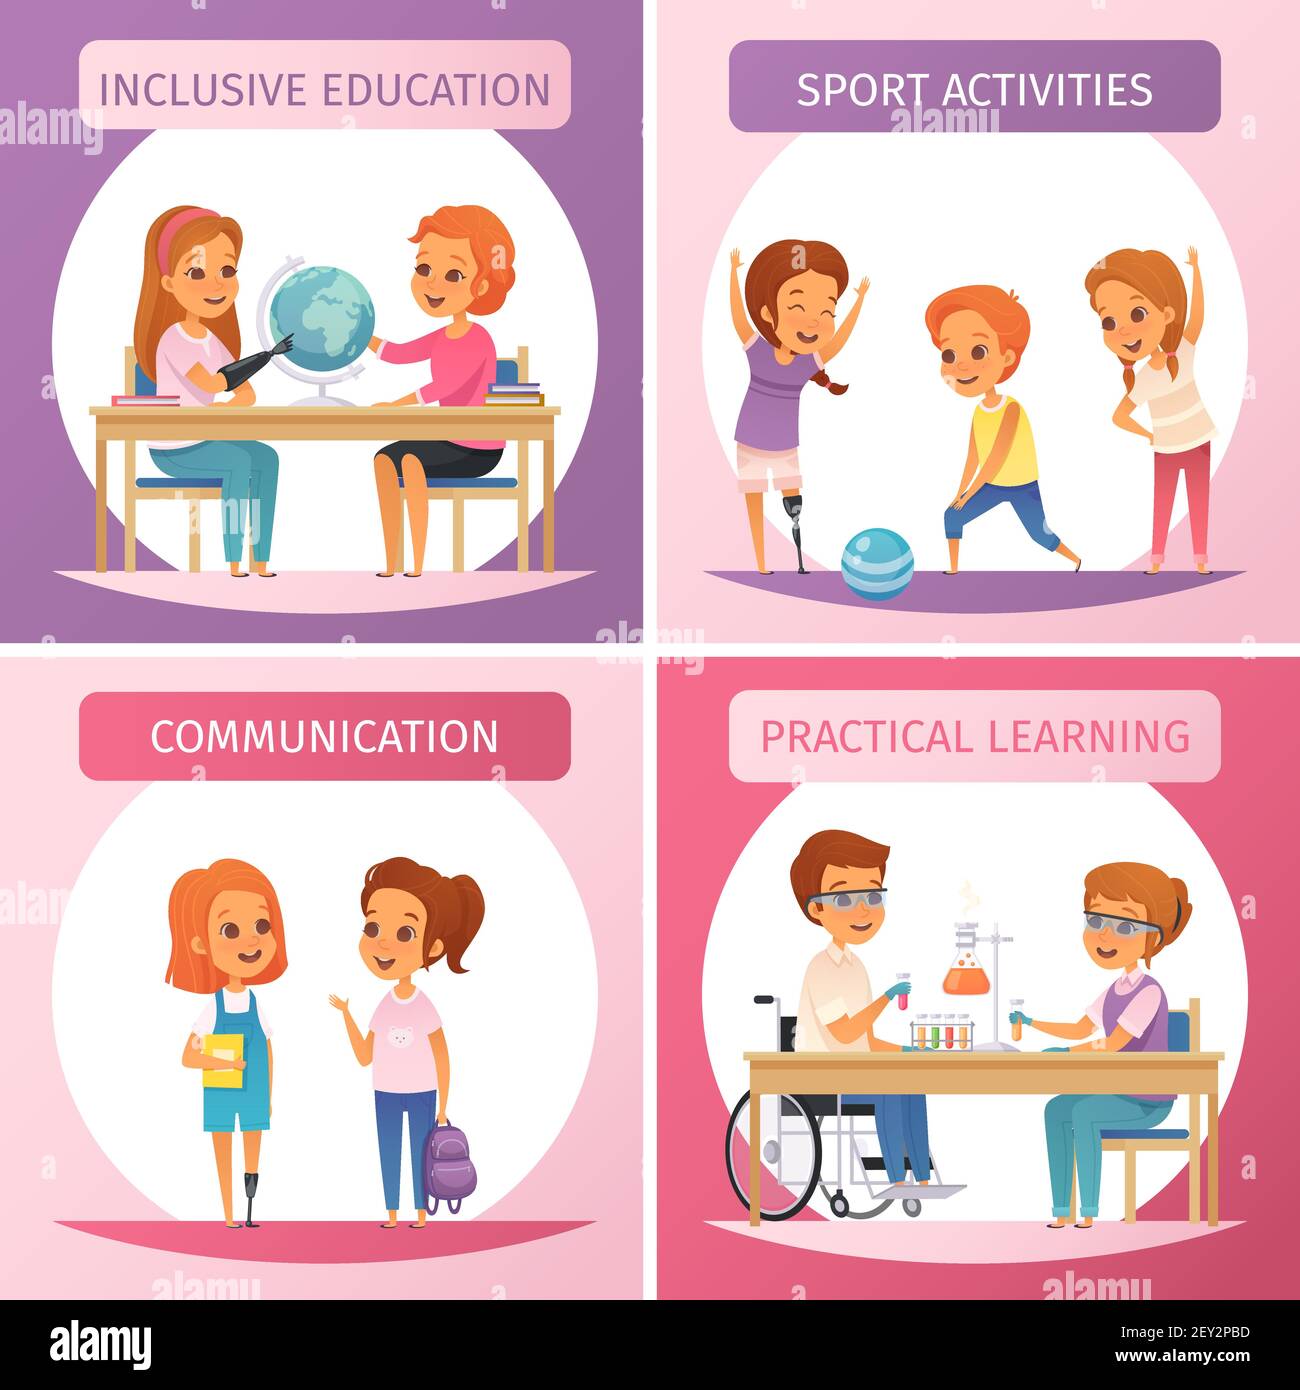 Vier Quadrate Inklusion Inklusiv Bildung Icon Set mit Inklusiv Bildung Kommunikation Sport-Aktivitäten und praktische Lernbeschreibungen Vektor Stock Vektor